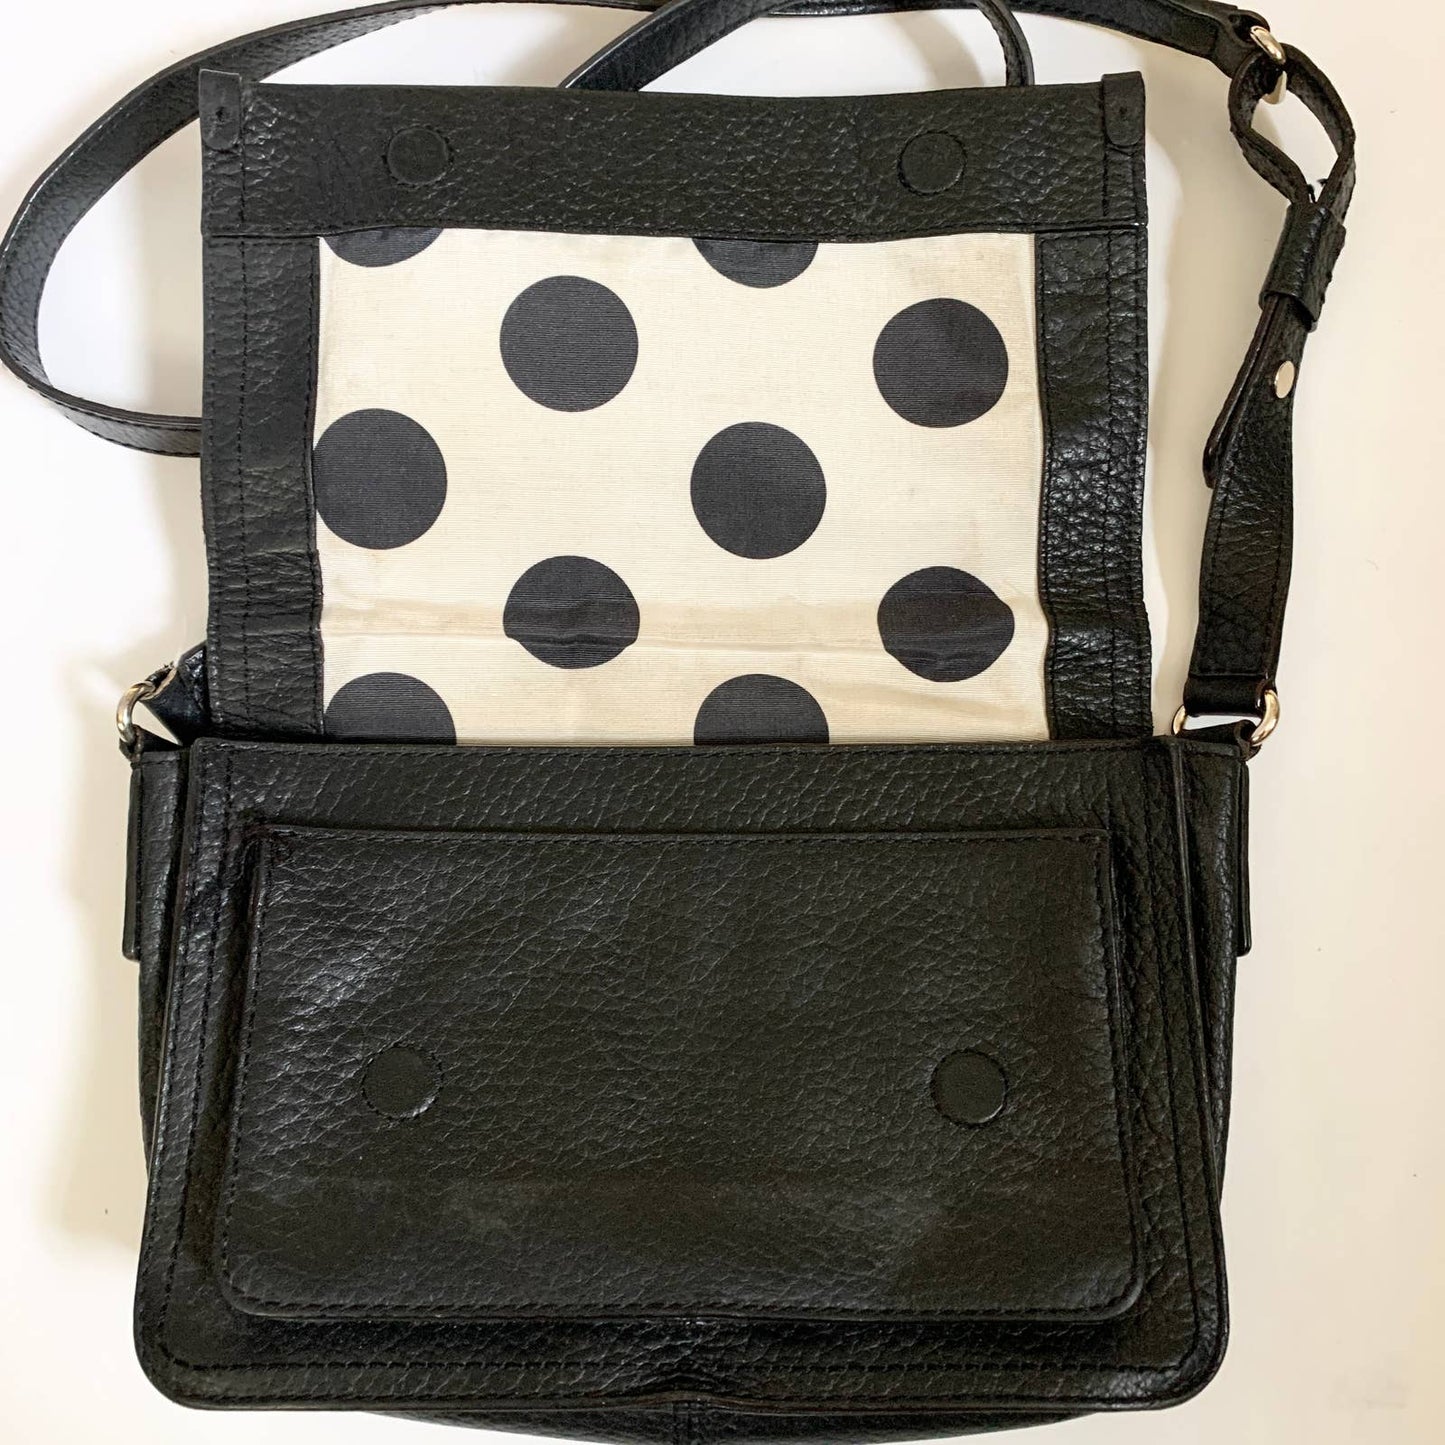 Kate Spade Pebbled Leather Crossbody Shoulder Flap Bag Purse Black Polka Dot